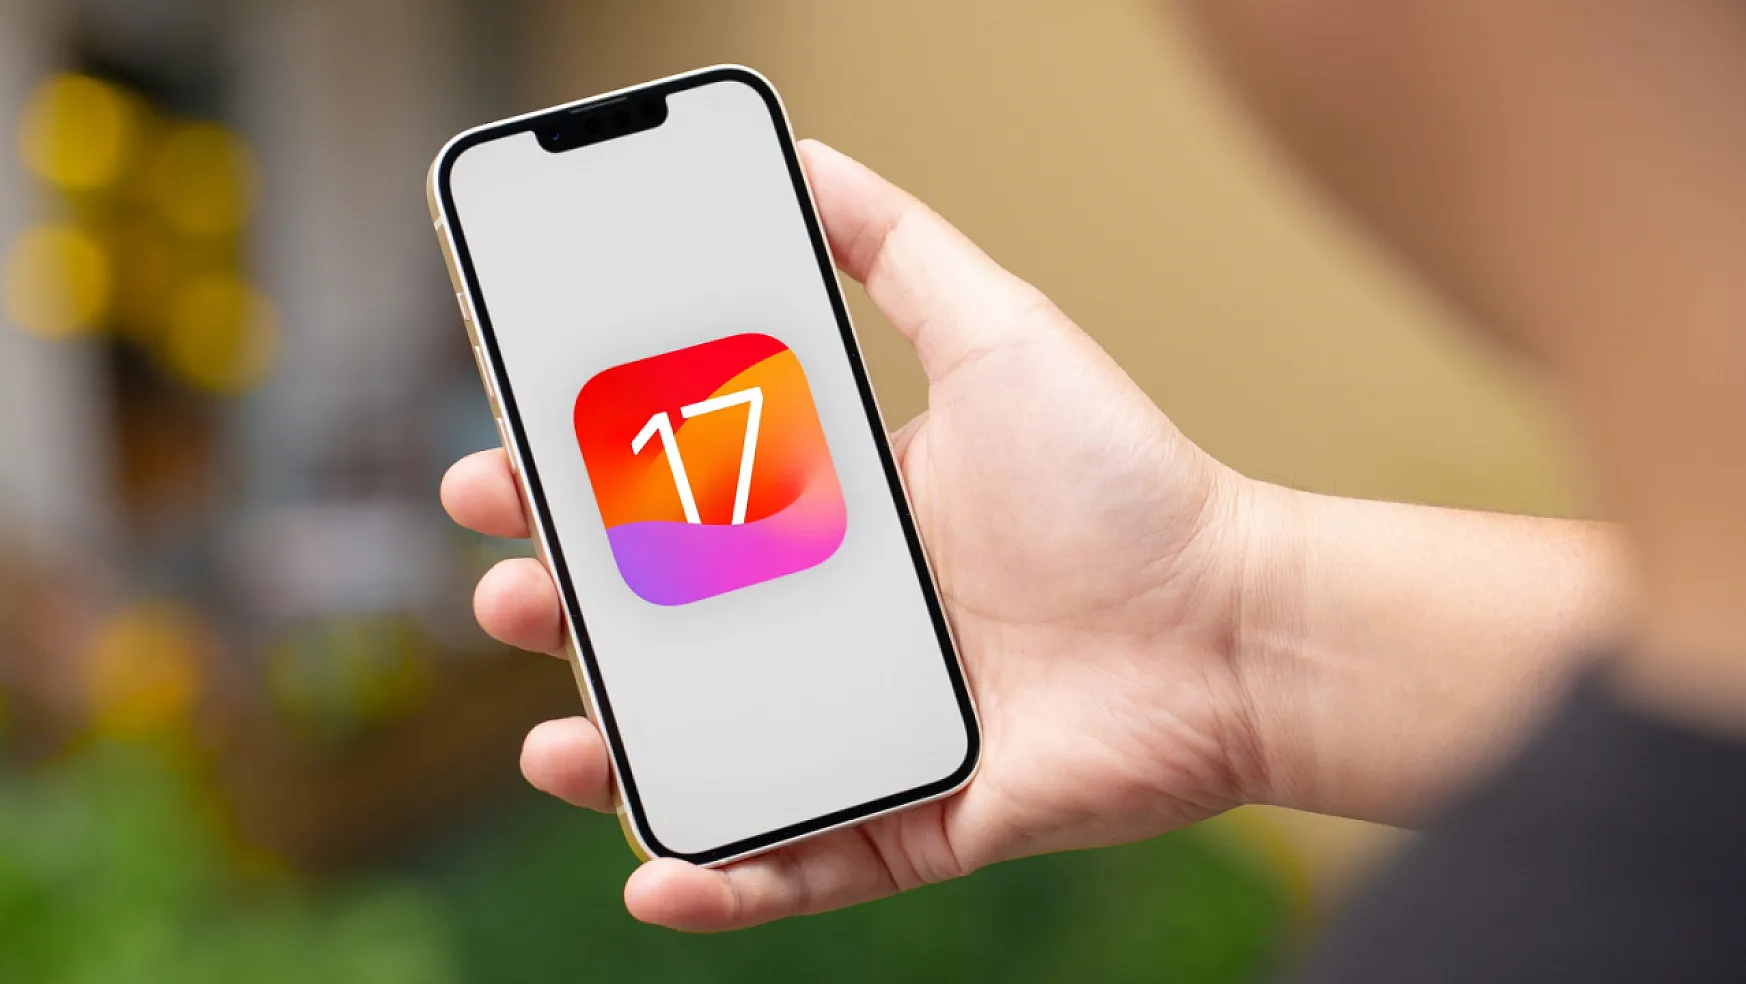 iOS sürüm düşürme nasıl yapılır? iOS 17'den iOS 16'ya dönmek mümkün mü?